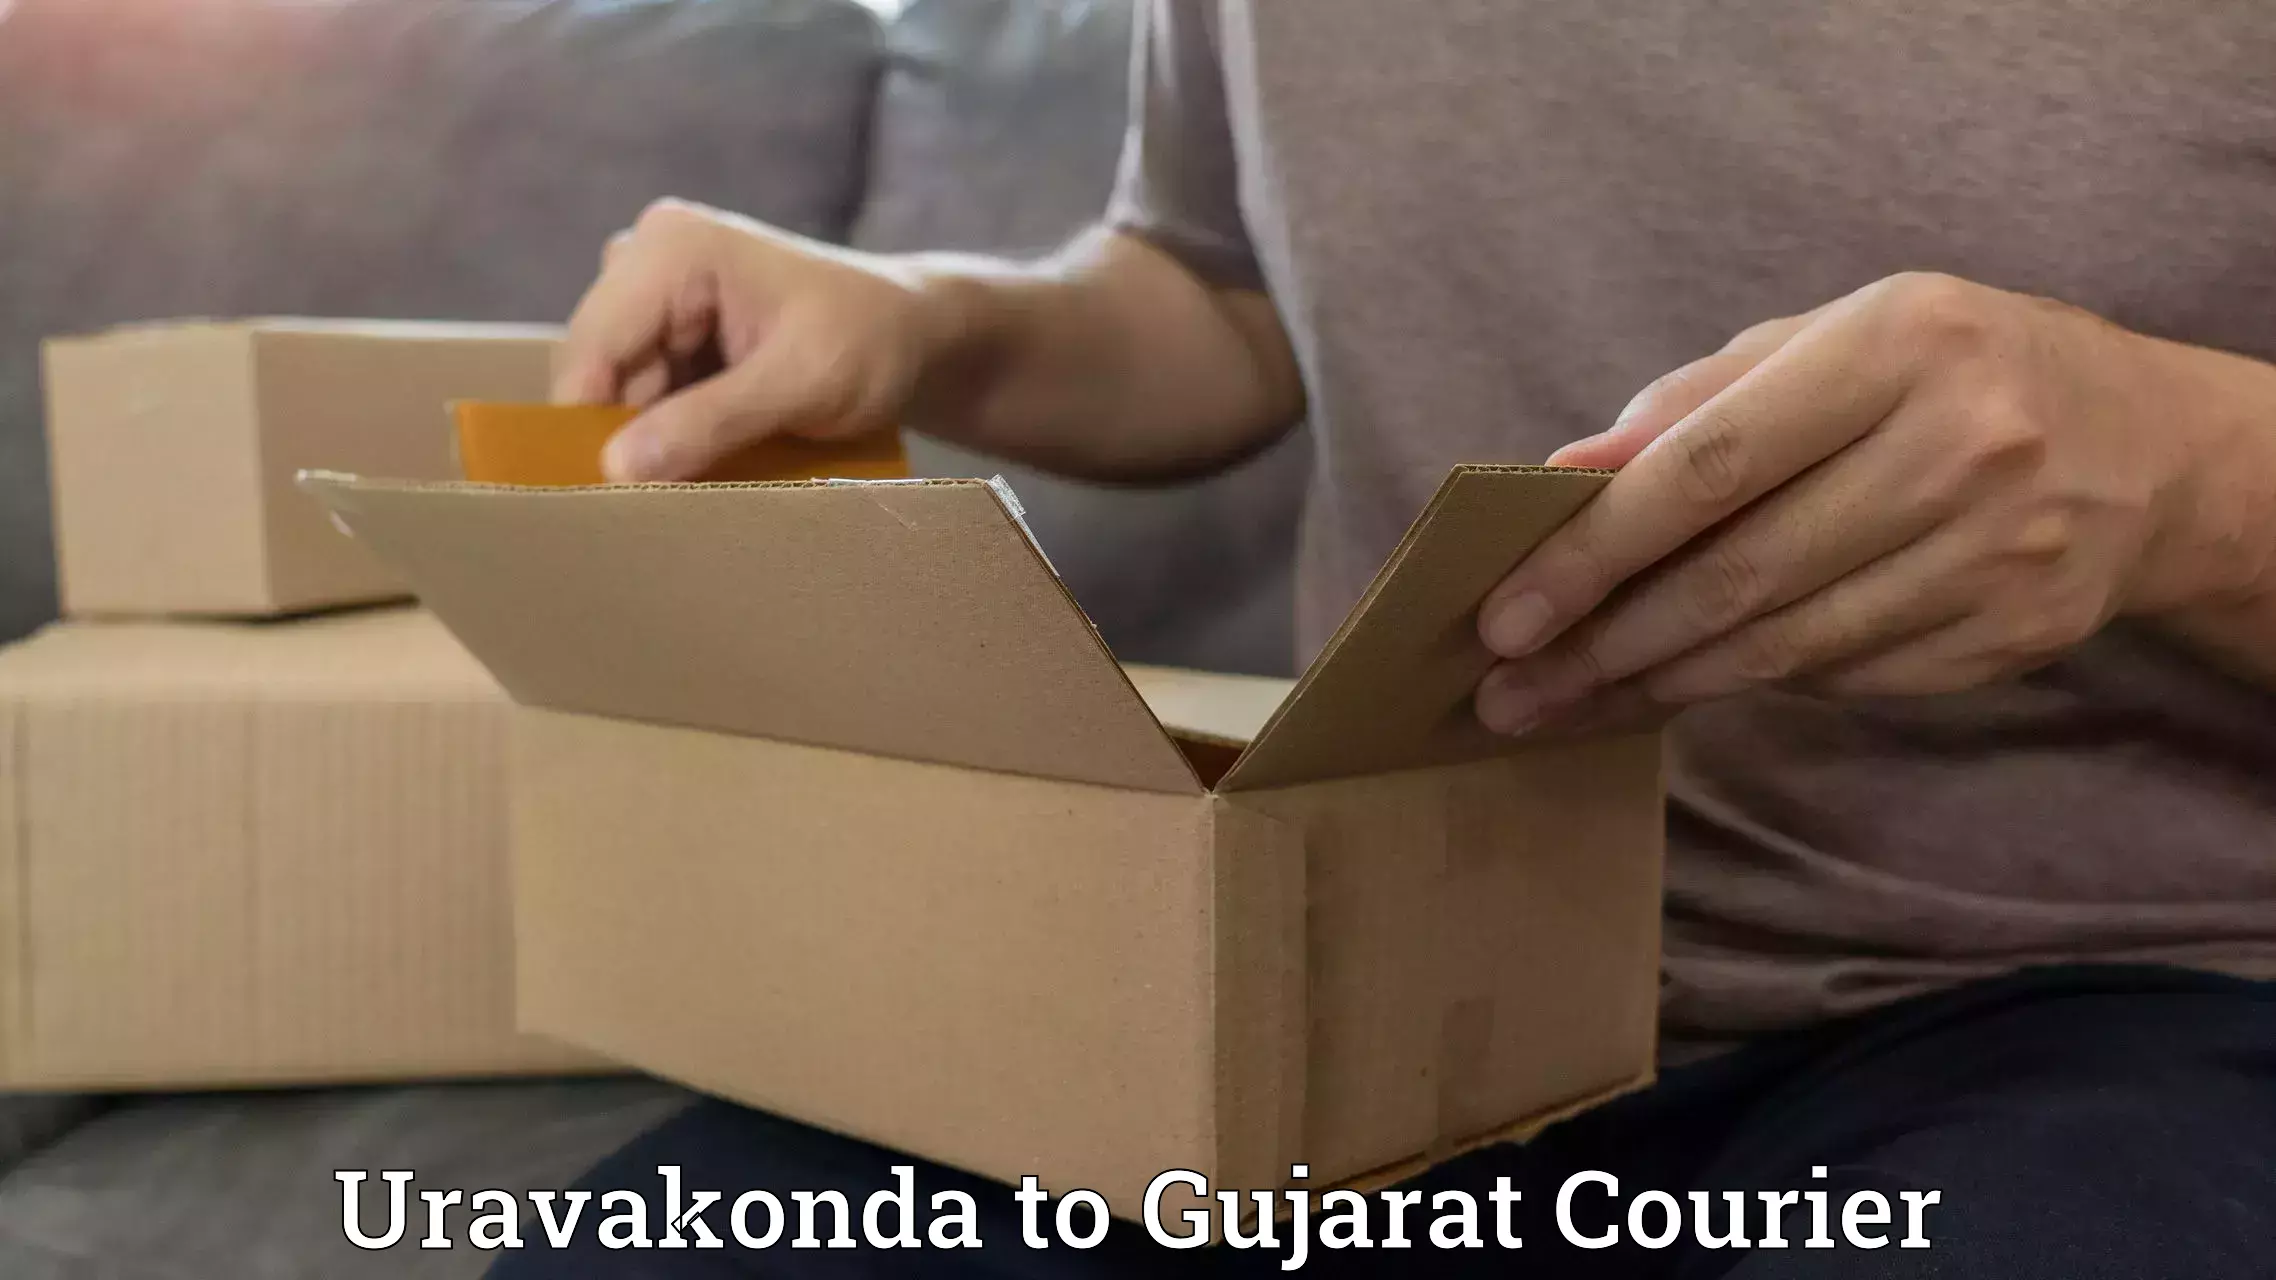 Courier tracking online Uravakonda to Rajkot